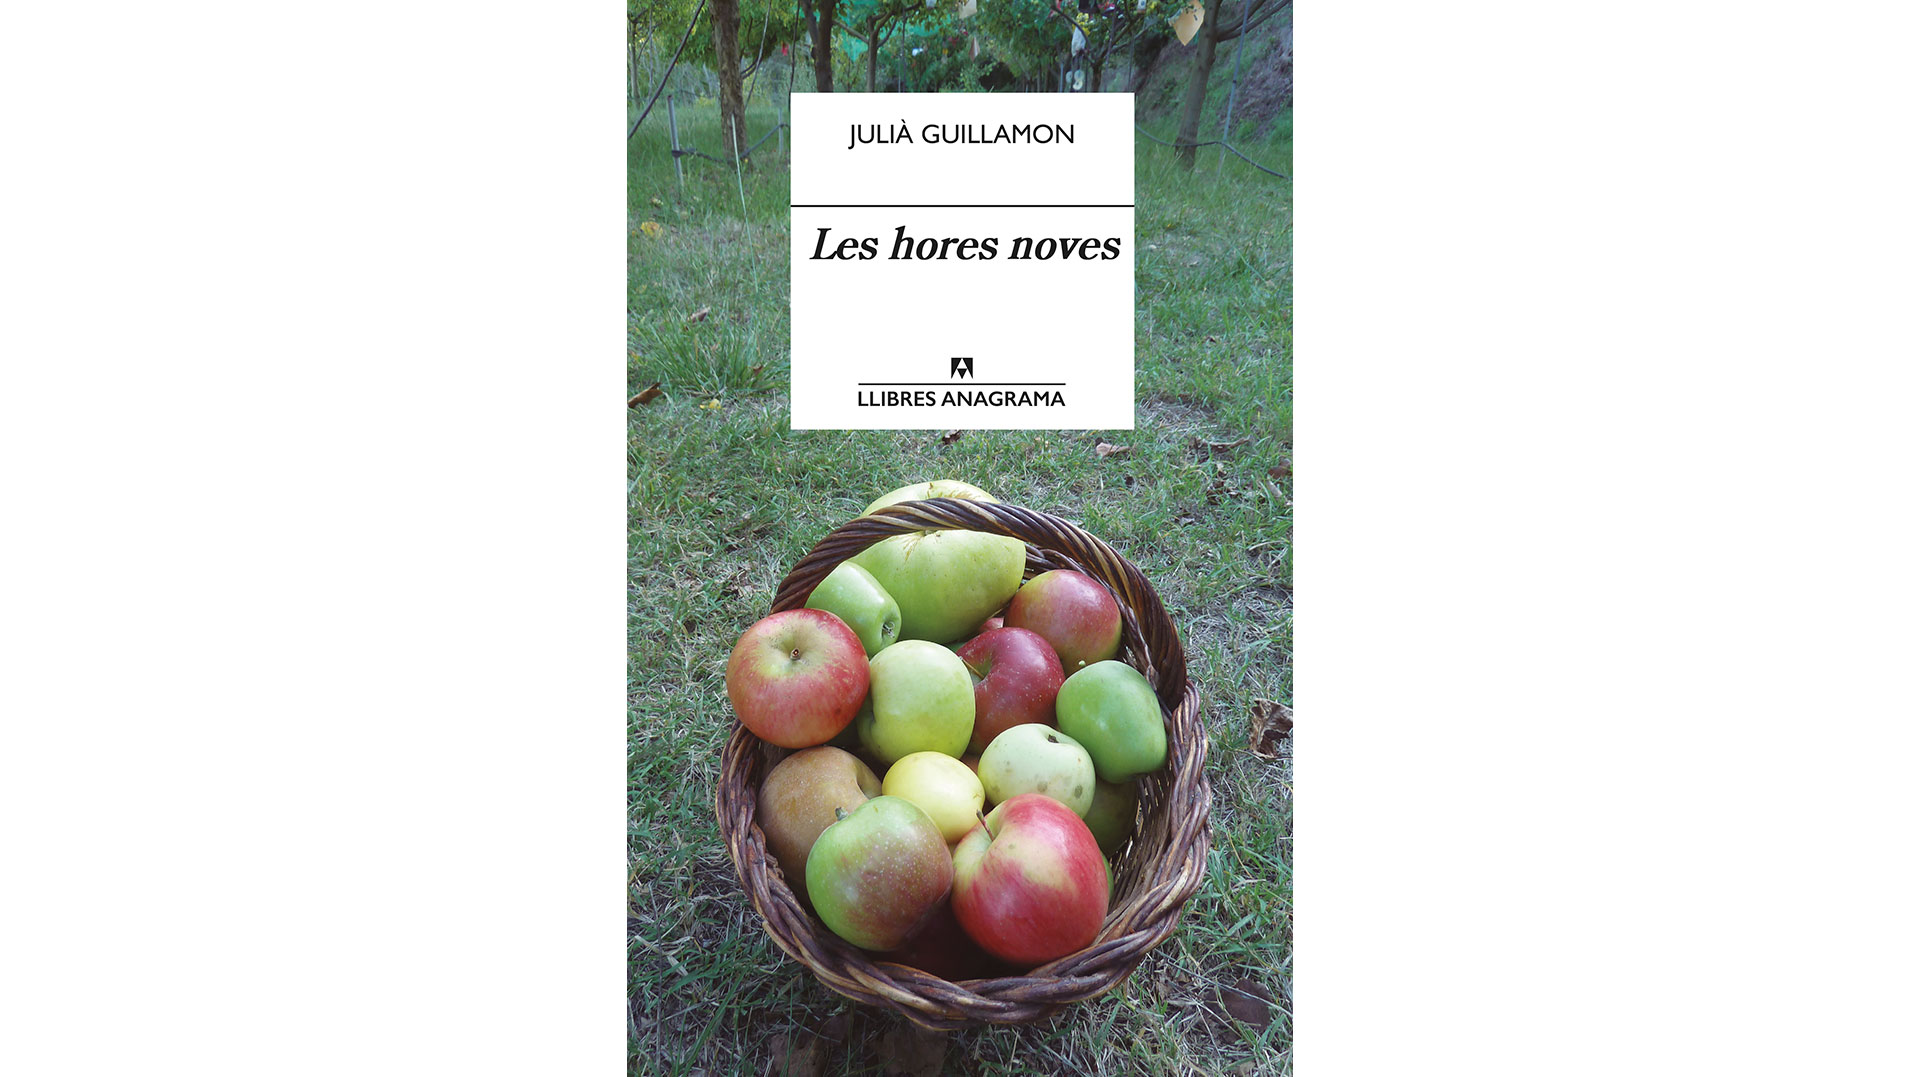 Presentació del llibre “Les hores noves”, de Julià Guillamon